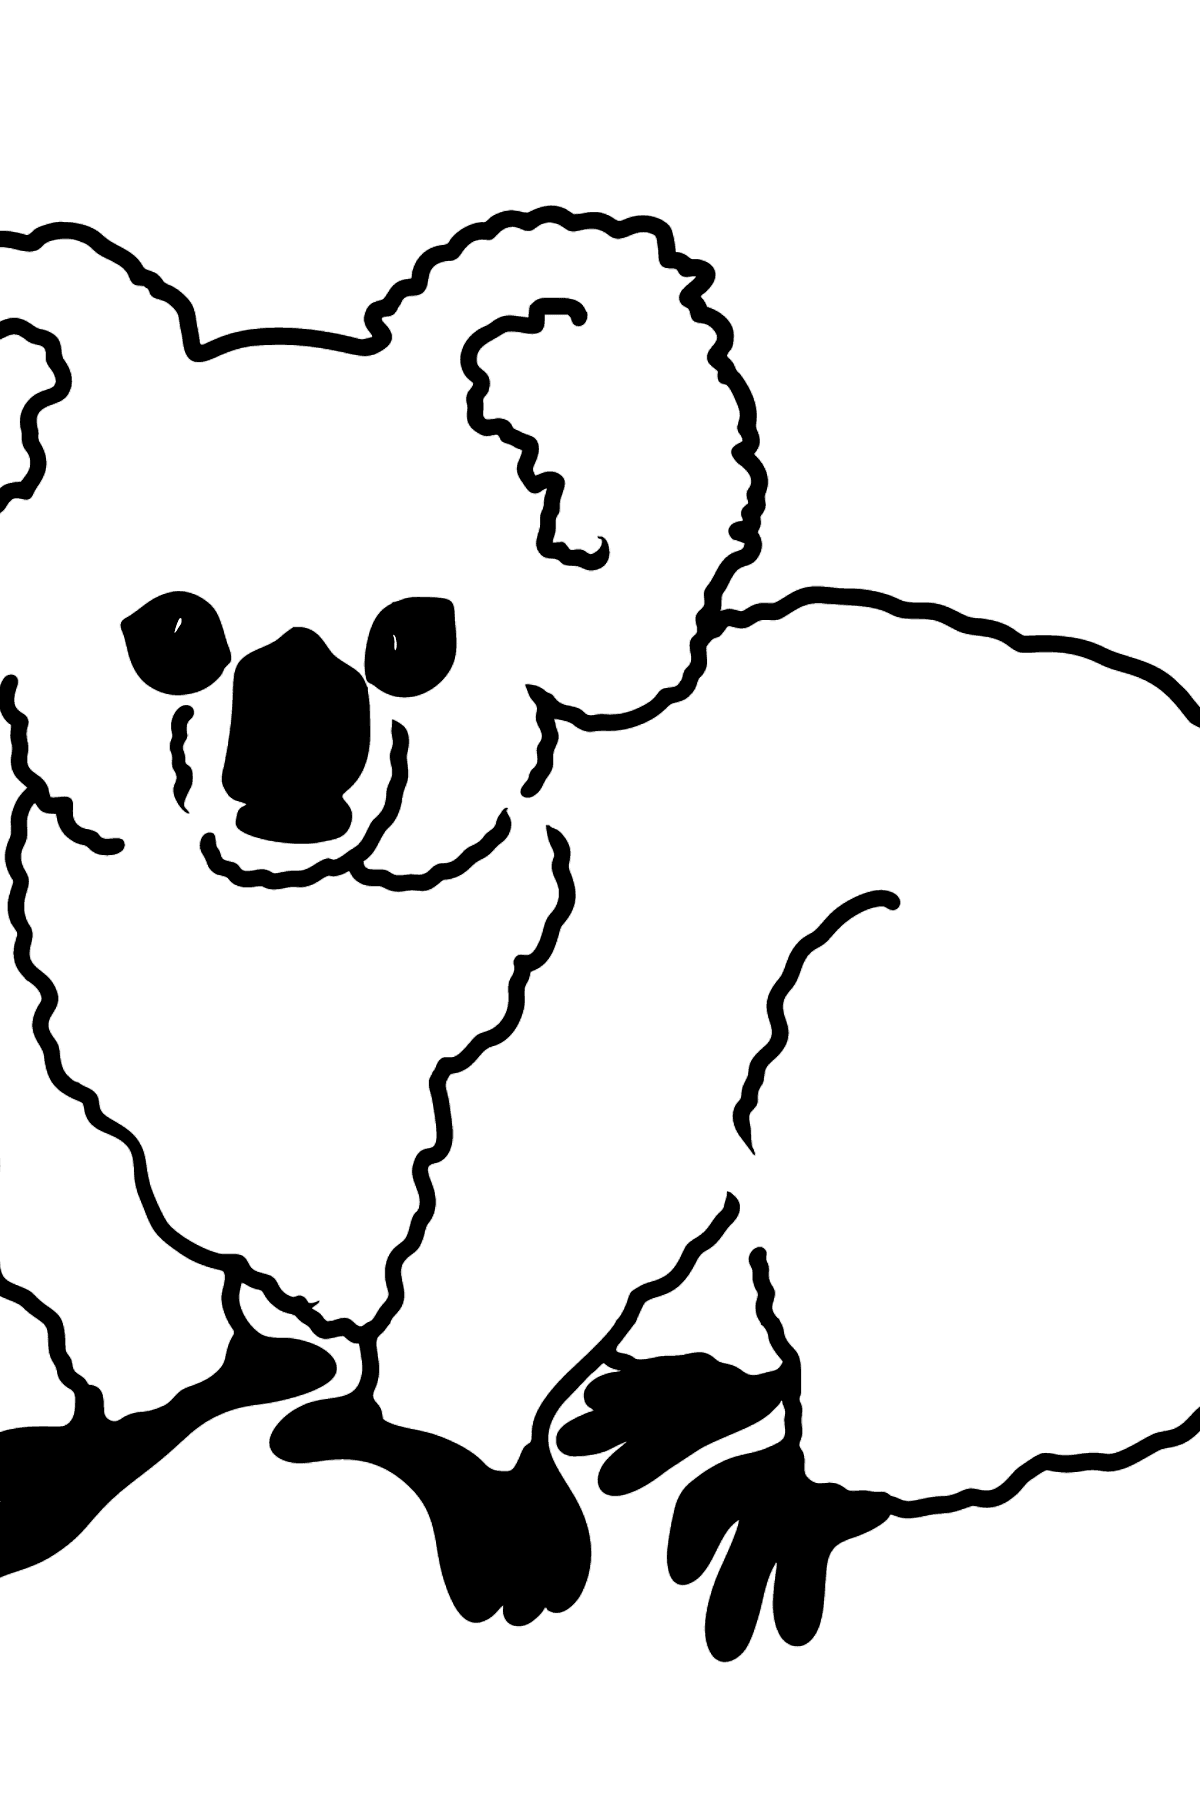 Desenho para colorir de coala - Imagens para Colorir para Crianças